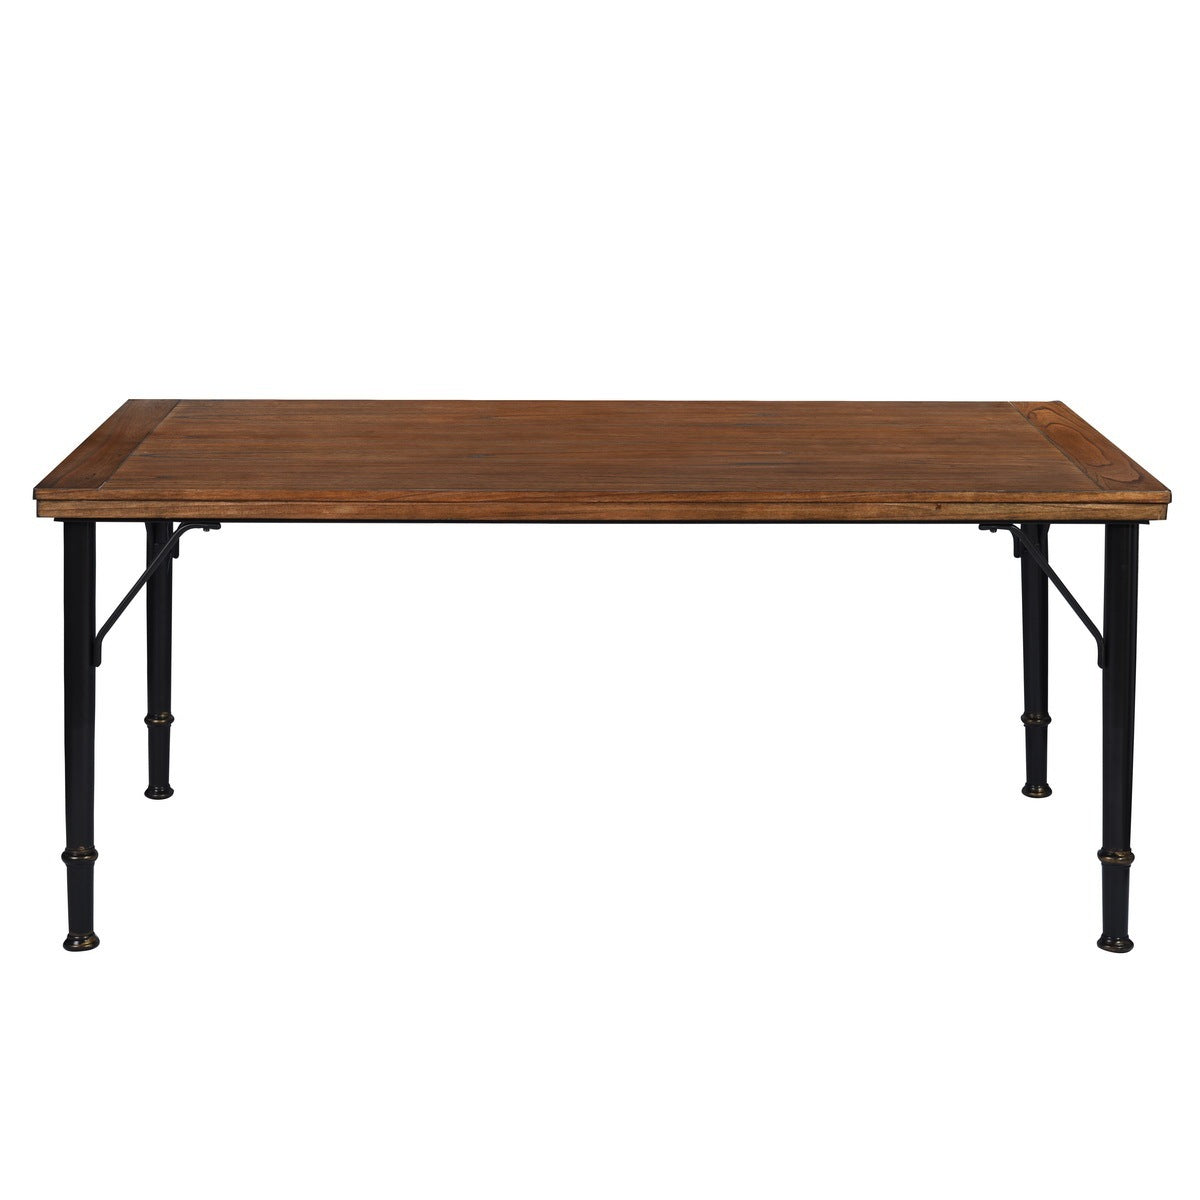 70.1" Solid wood veneered dining table, Rustic Brown & Black